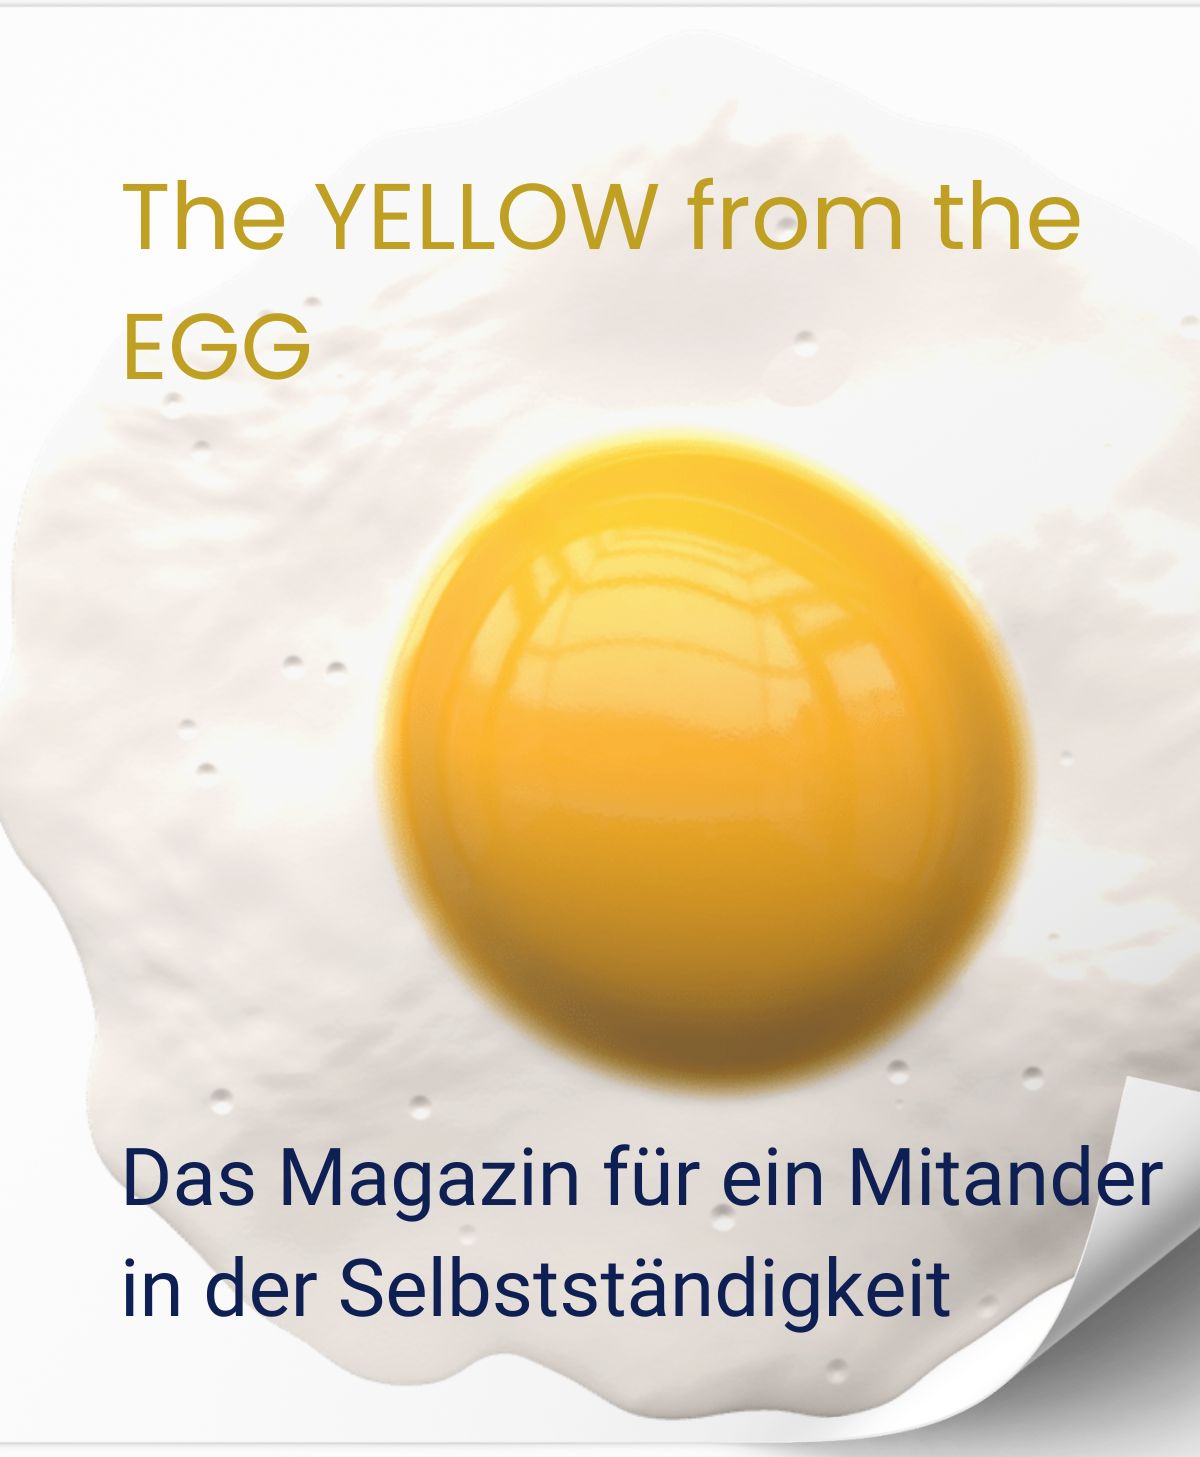 Sibillek- News-Magazin. Foto zeigt Spiegelei und Überschrift The Yellow from the Egg